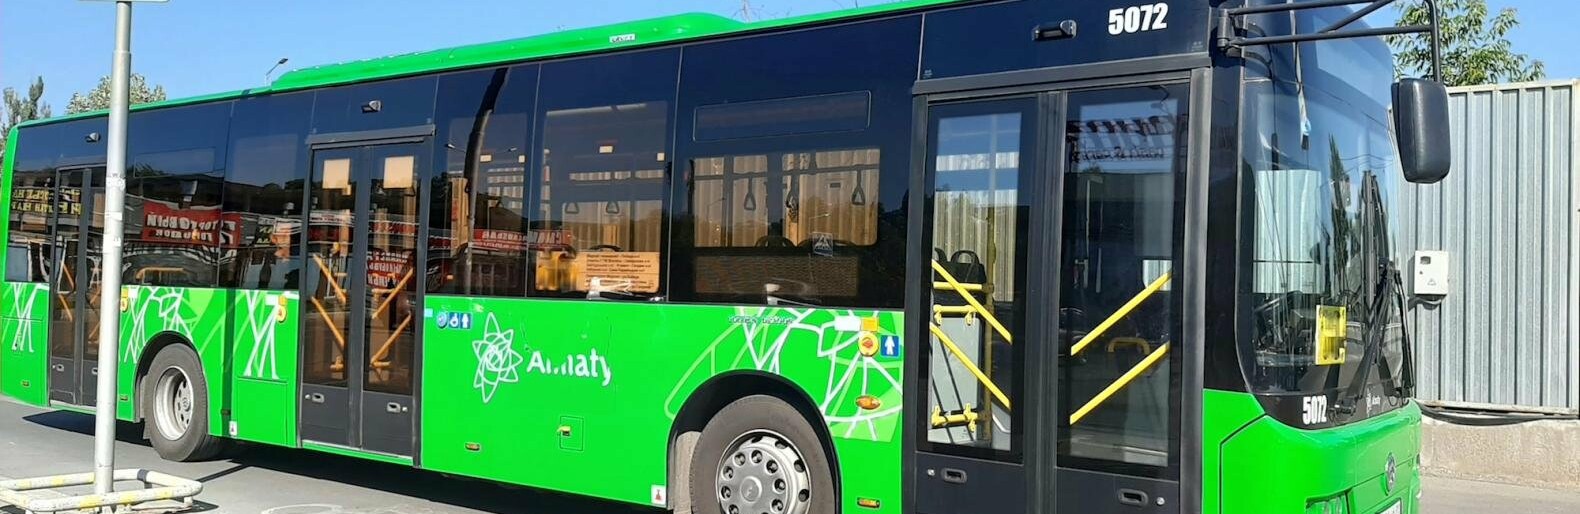 Два автобусных маршрута в Алматы временно изменят схему из-за ремонта дороги